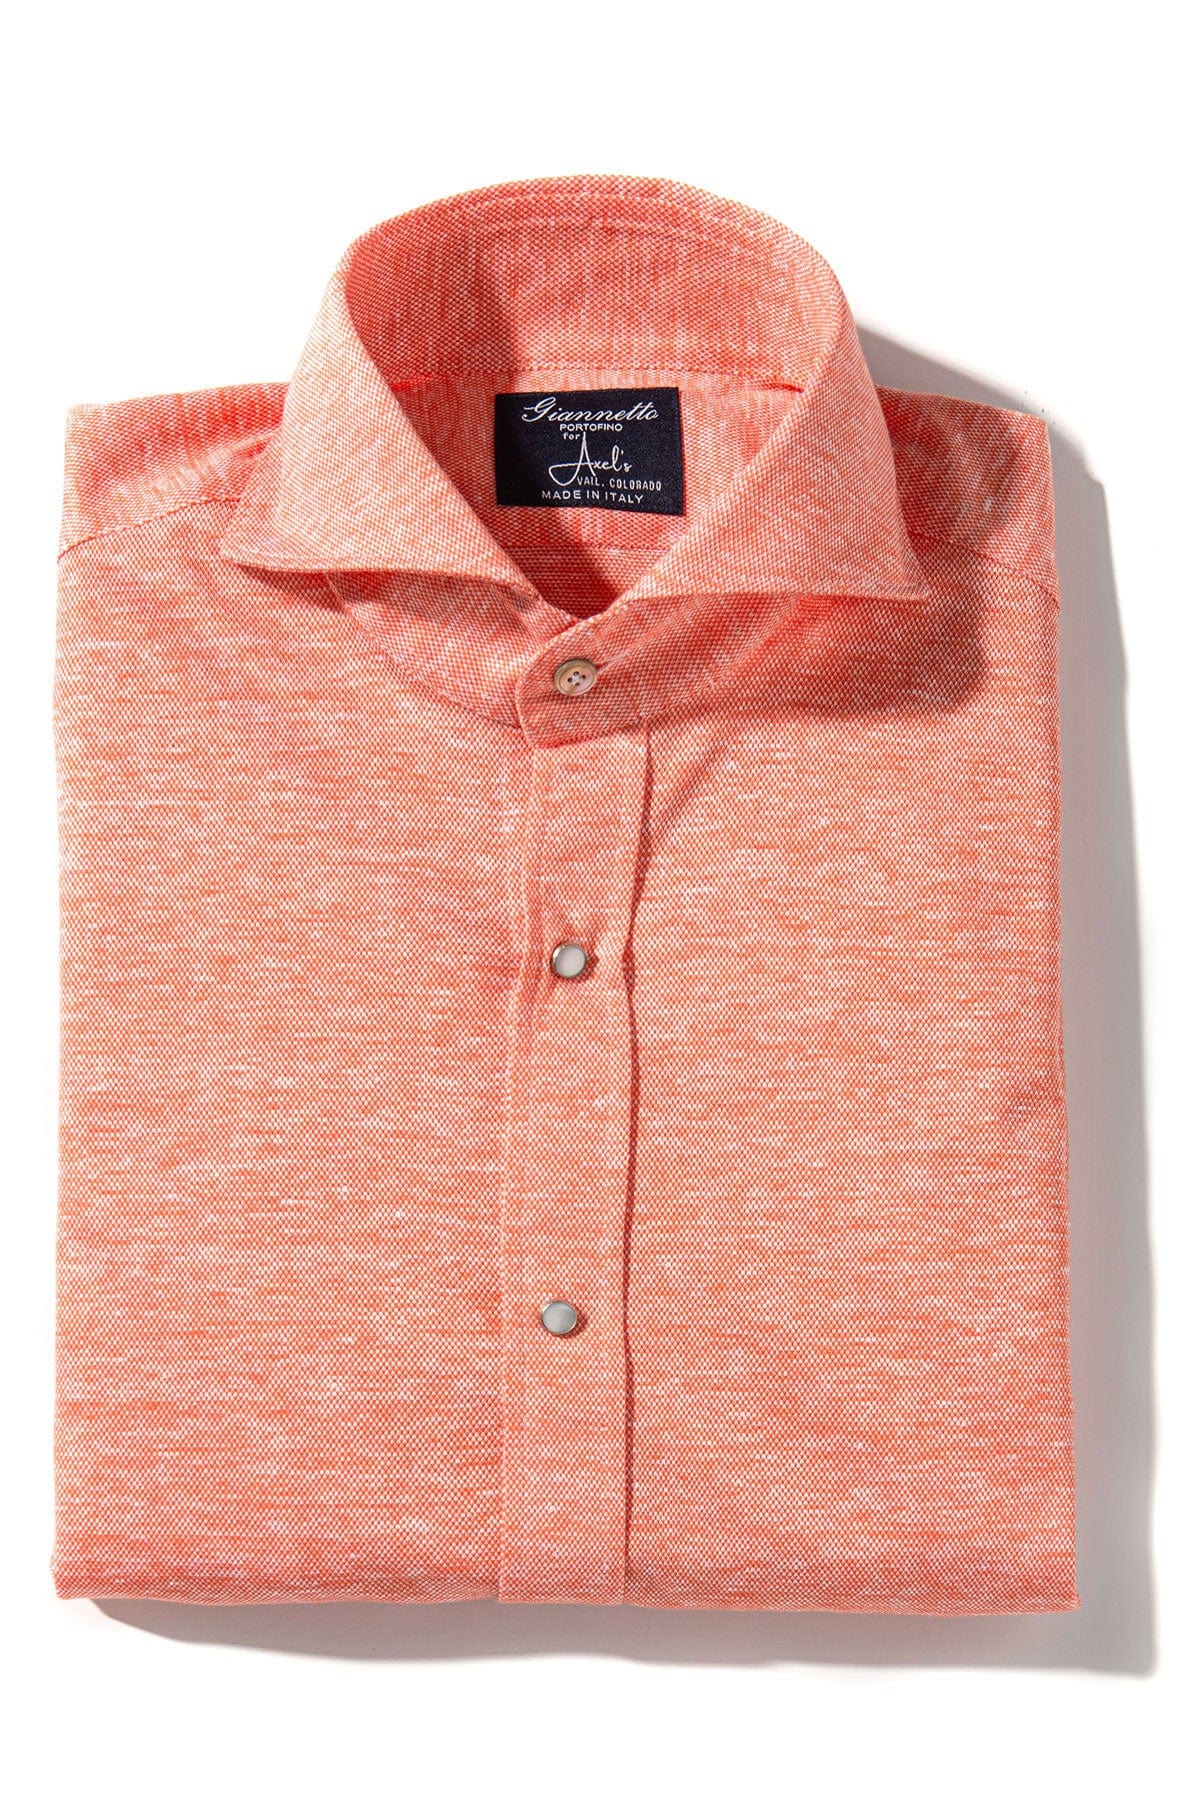 Schwinn Cotton Linen Shirt in Red - AXEL'S